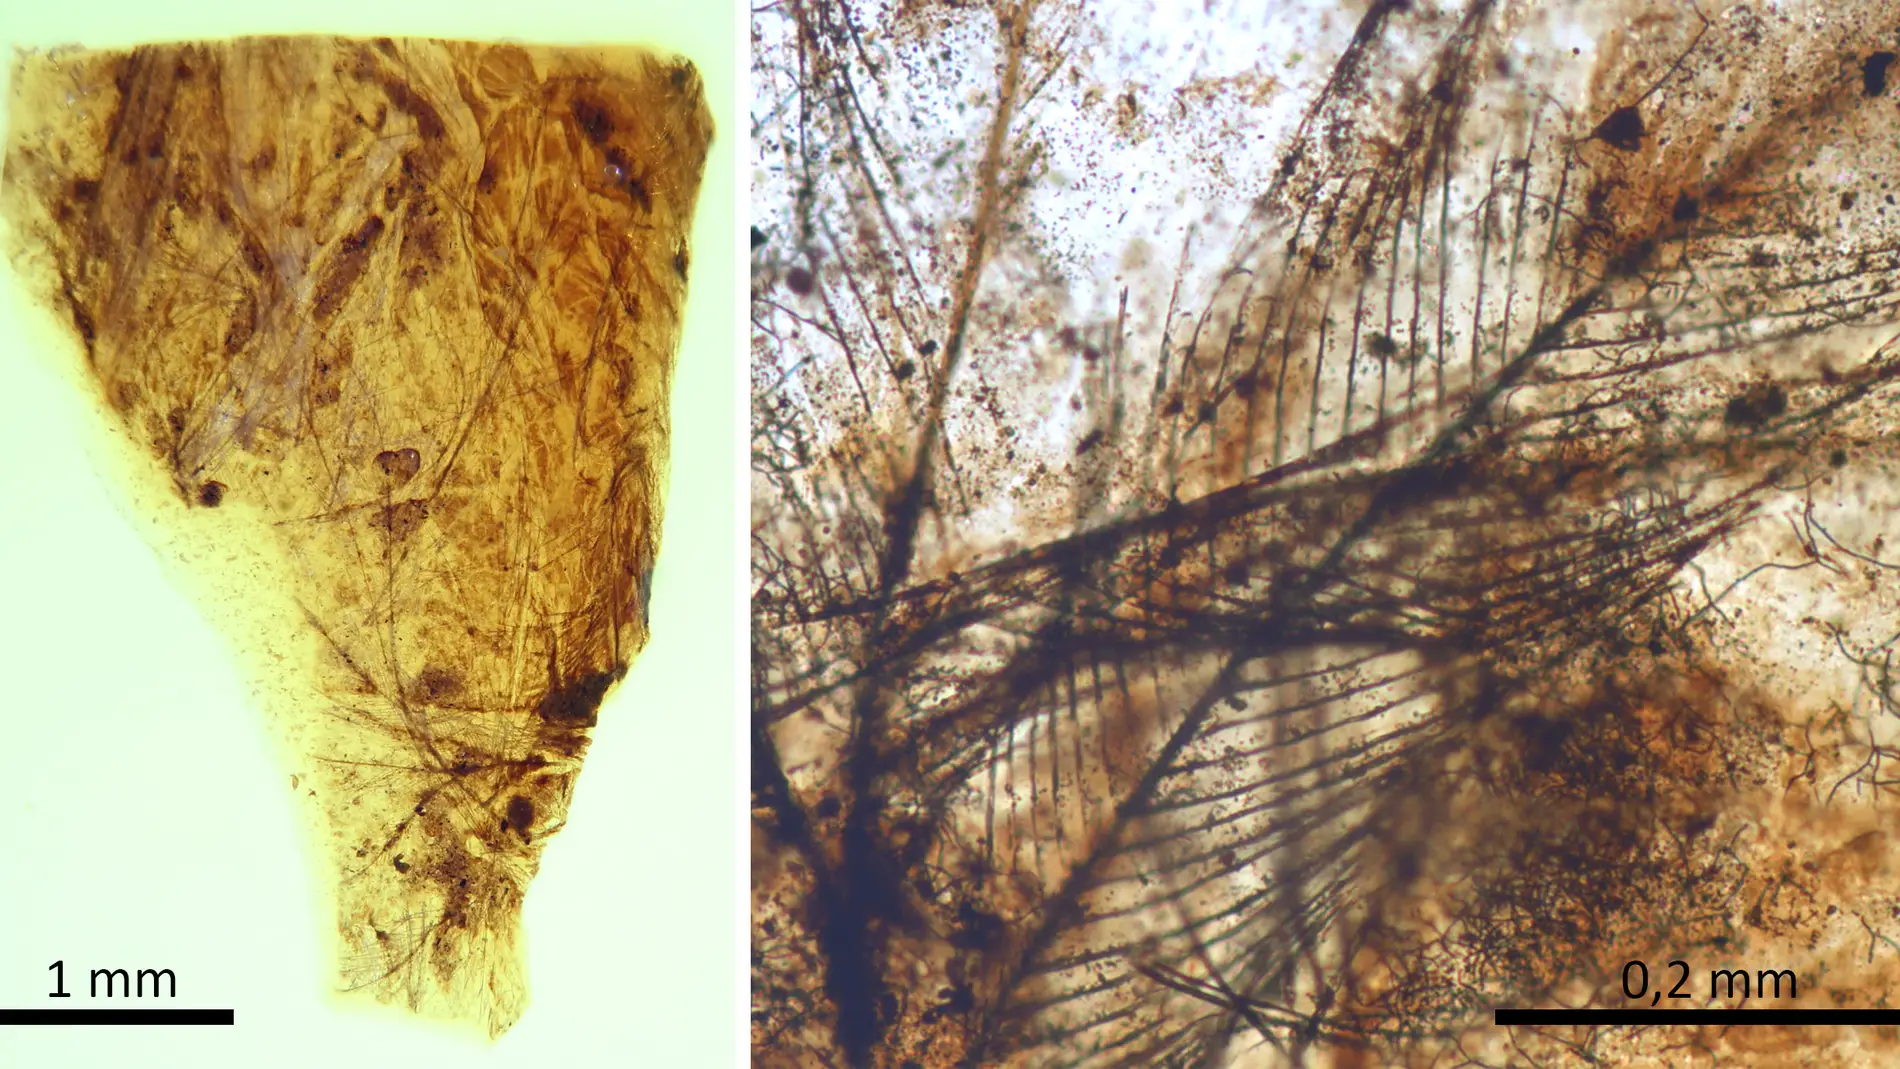 Hallan en Teruel los pelos de mamifero mas antiguos conservados en ambar